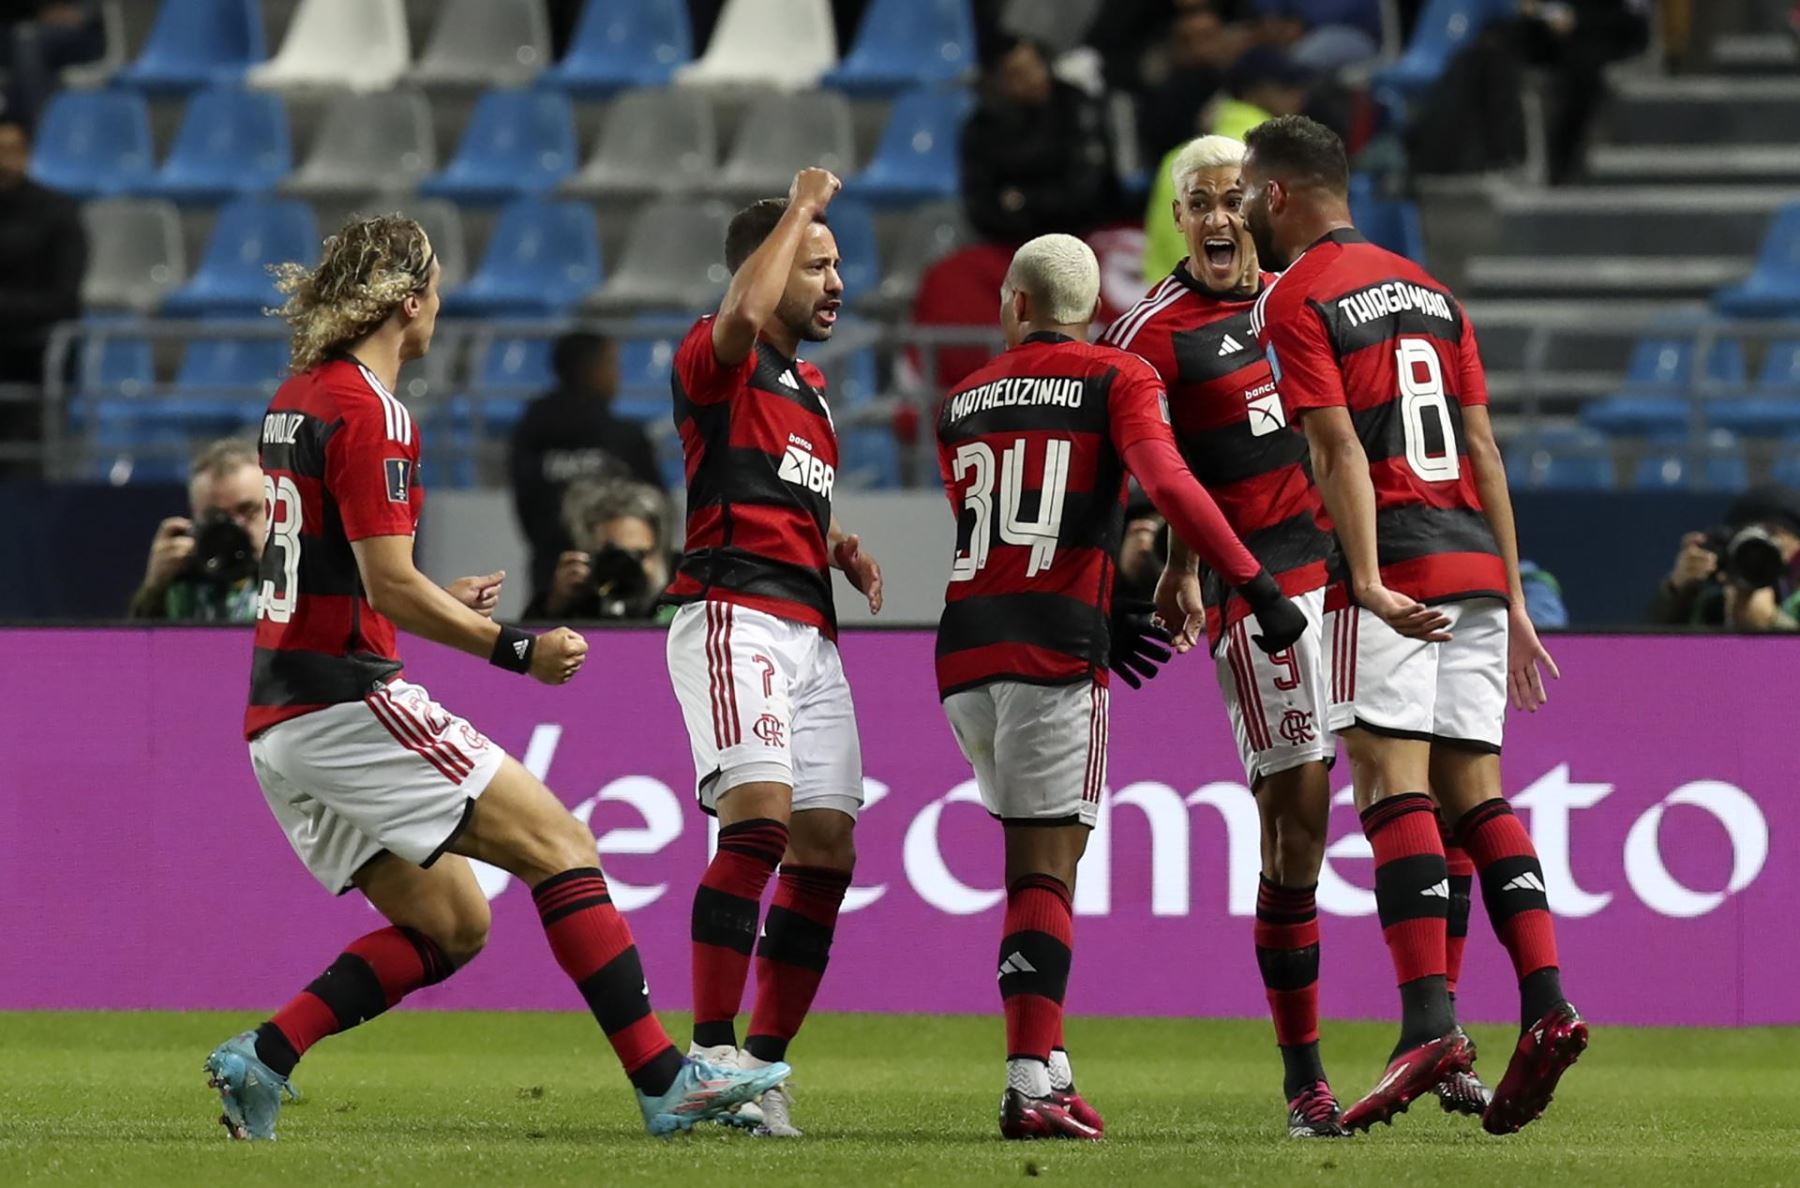 Copa Libertadores: Motivos que explican la decepción del Flamengo en el torneo